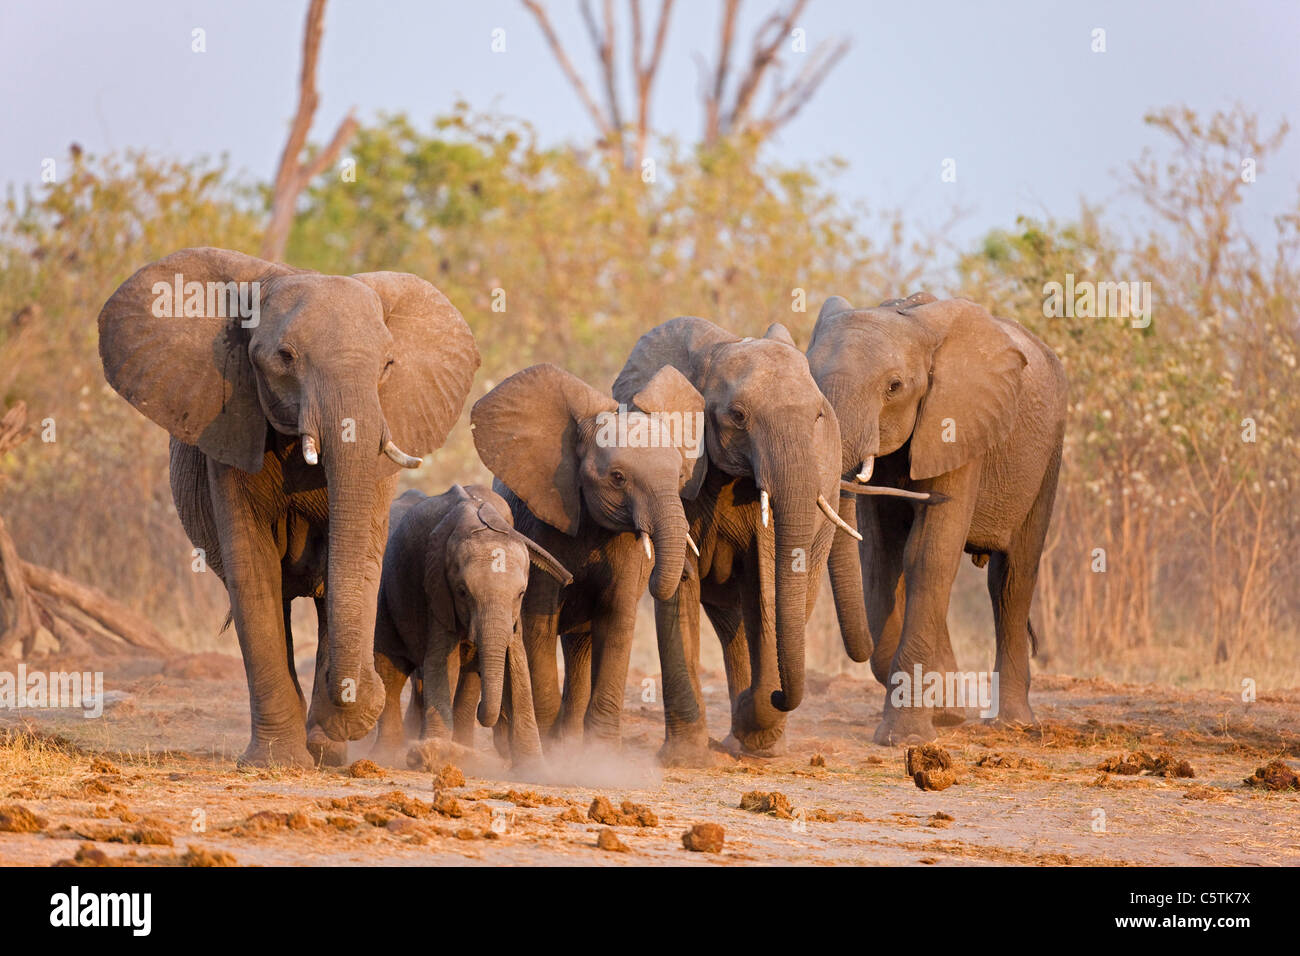 L'Afrique, Botswana, troupeau d'éléphants (Loxodonta africana) Balade Banque D'Images